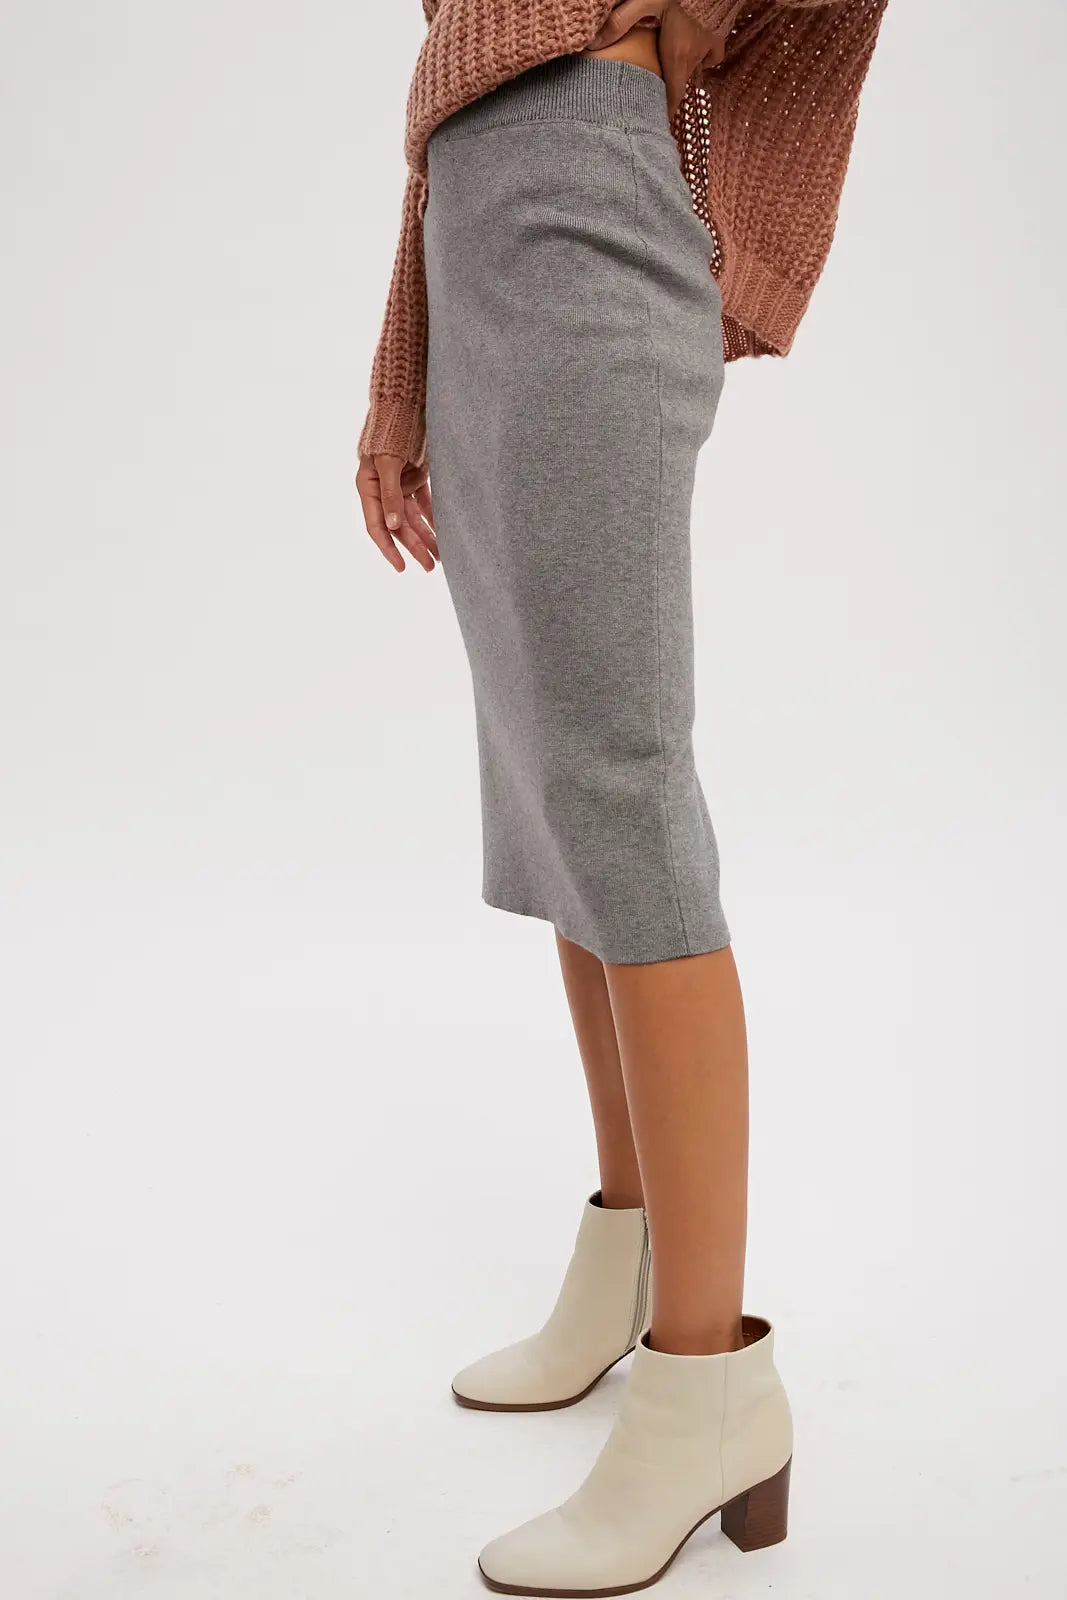 Gabby's Grey Midi Sweater Skirt